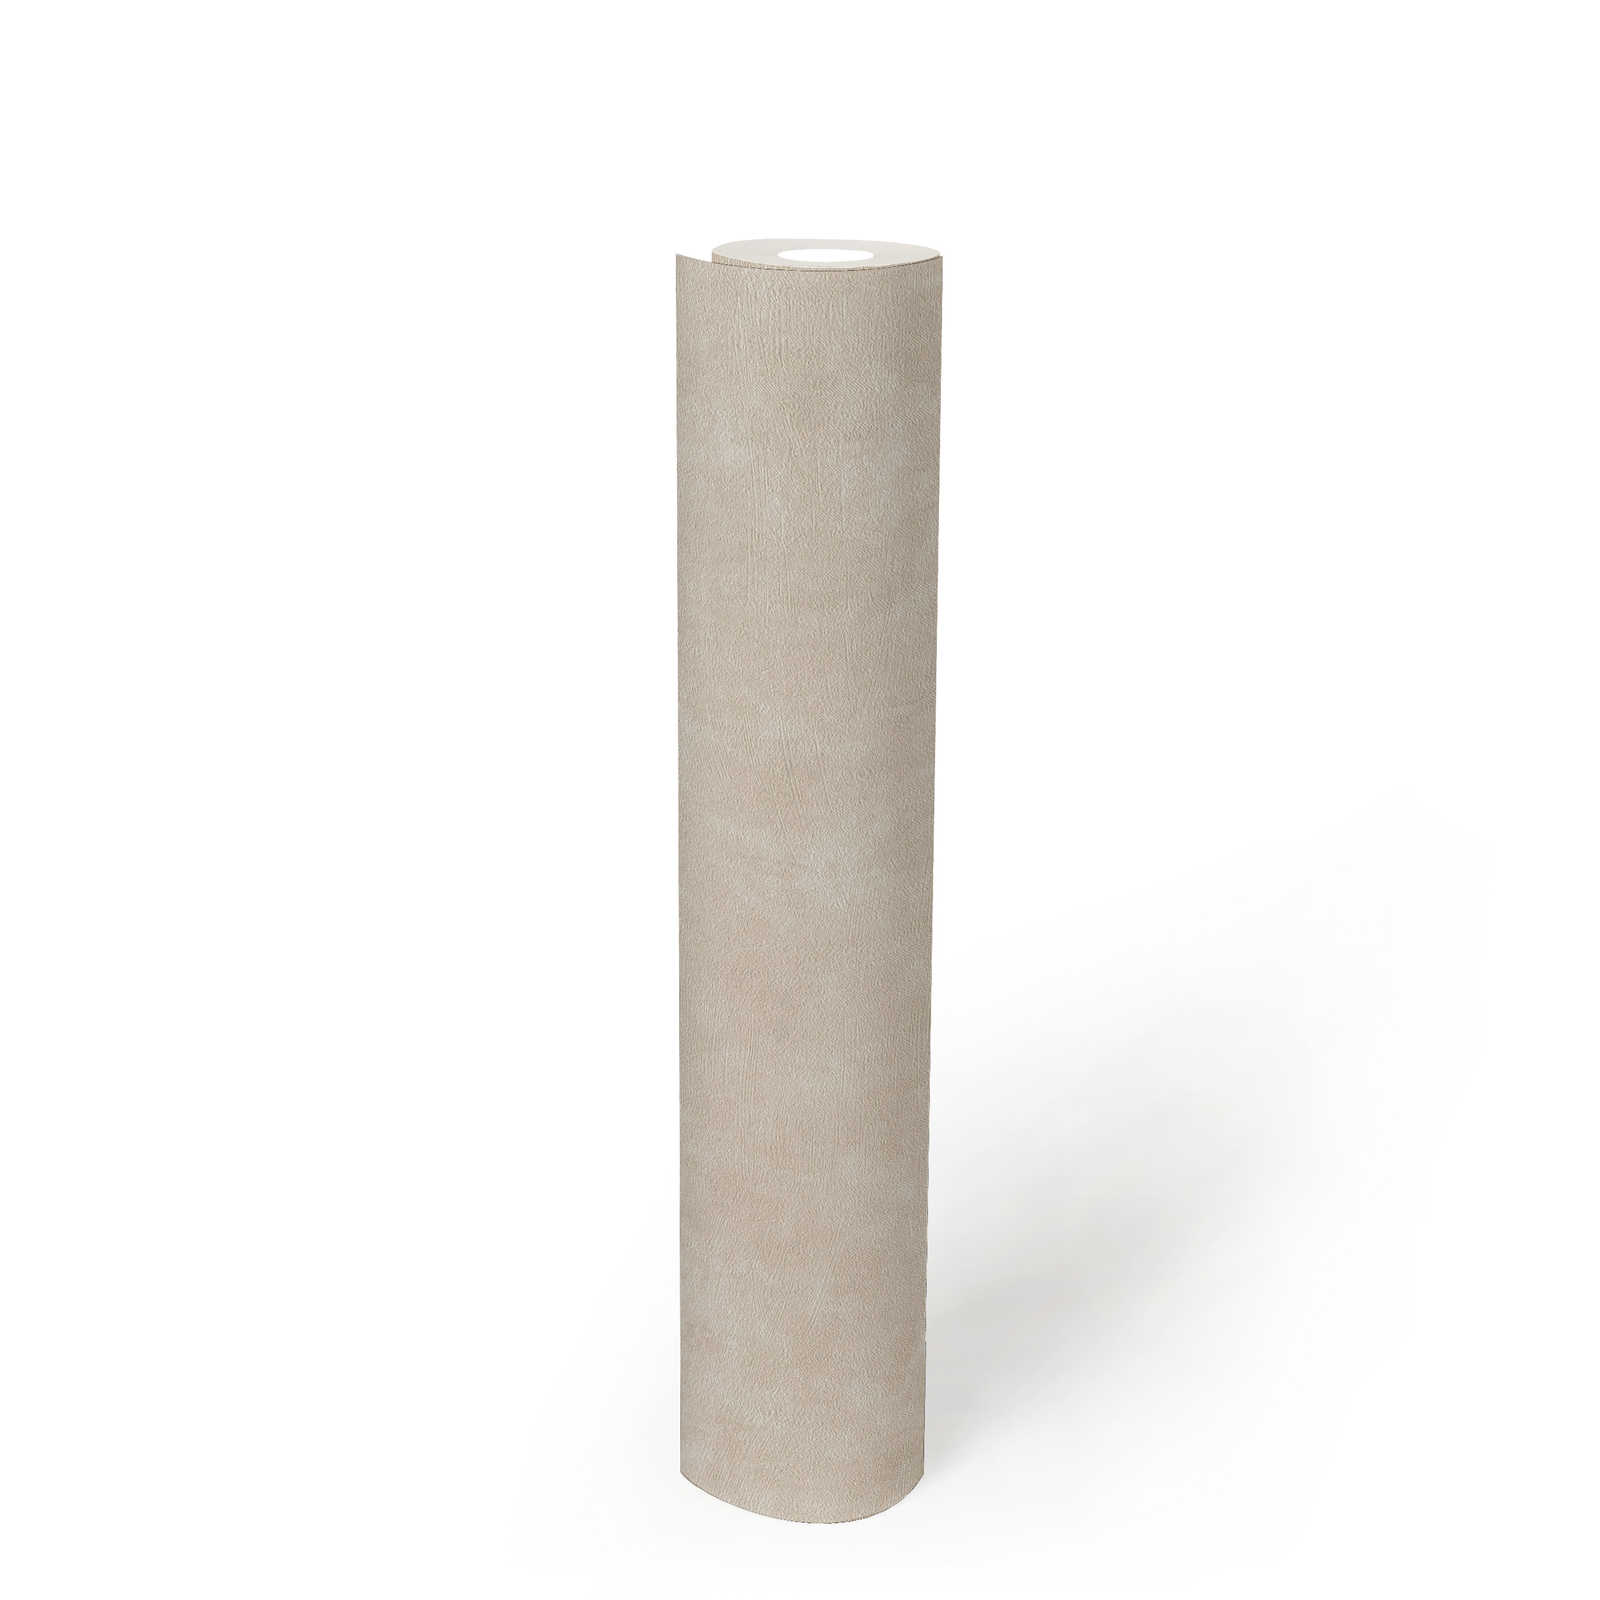             Vliesbehang vlakken met betonlook en structuur - crème, grijs
        